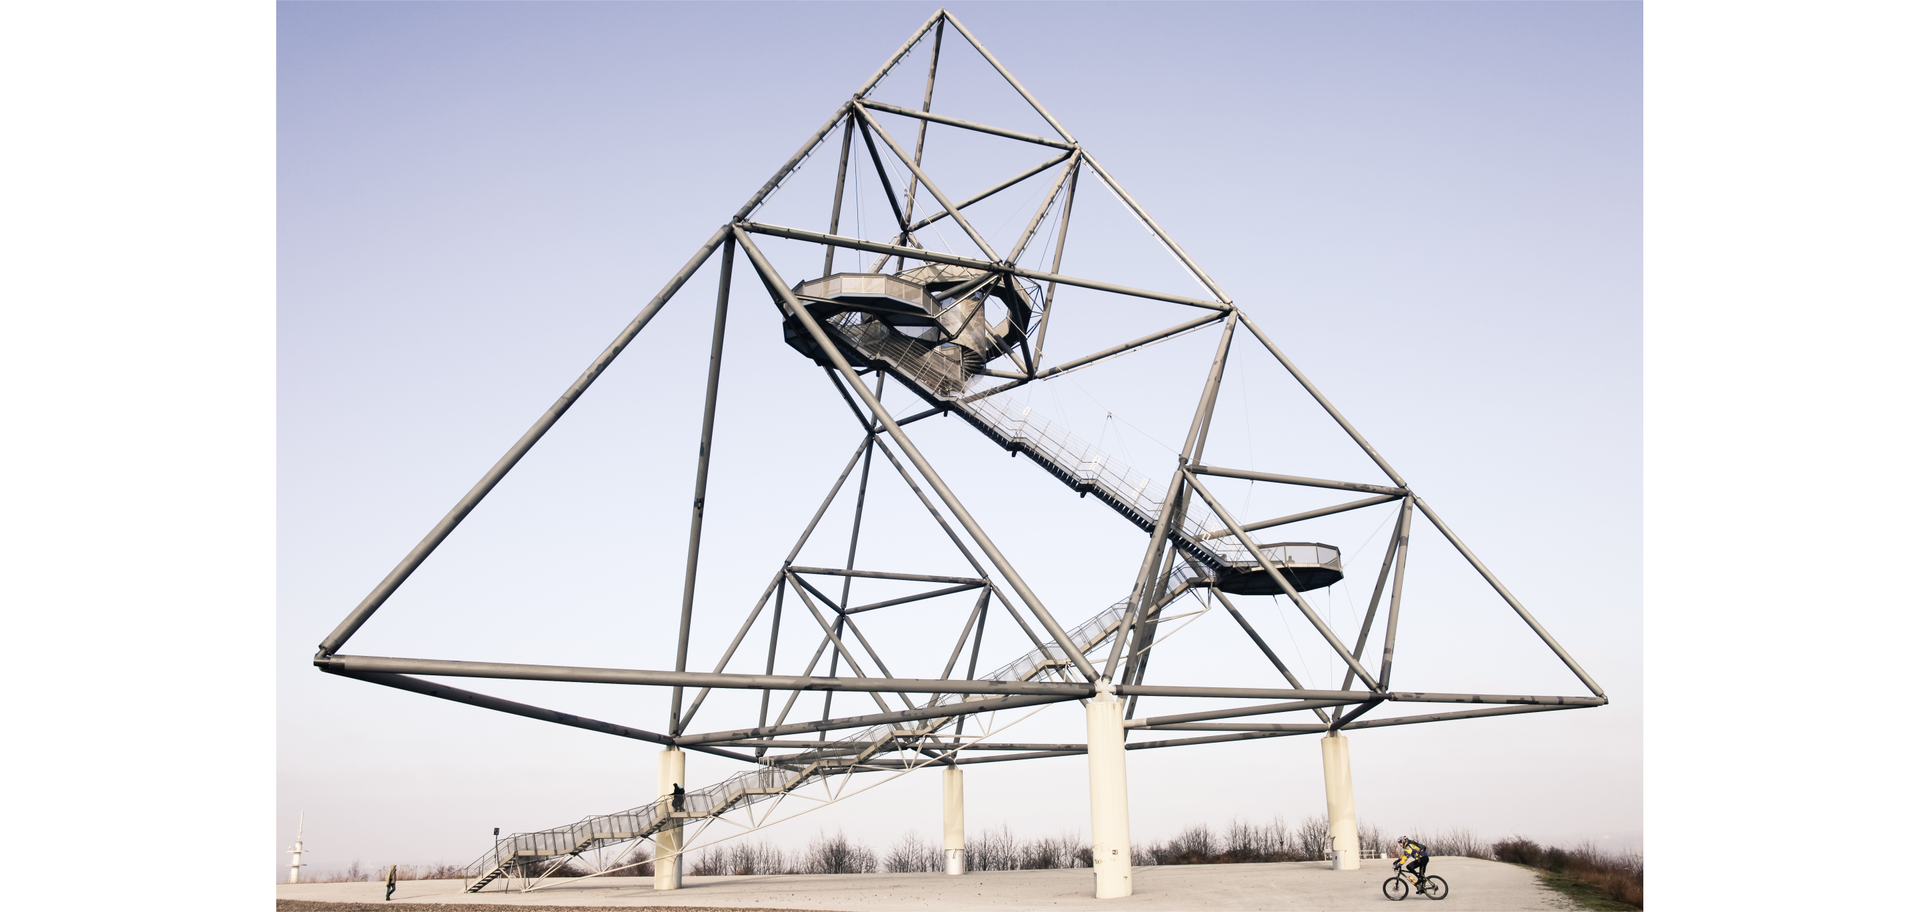 Zdjęcie przedstawia stalową konstrukcję w kształcie ostrosłupa o trójkątnej postawie, wewnątrz której znajdują się schody.